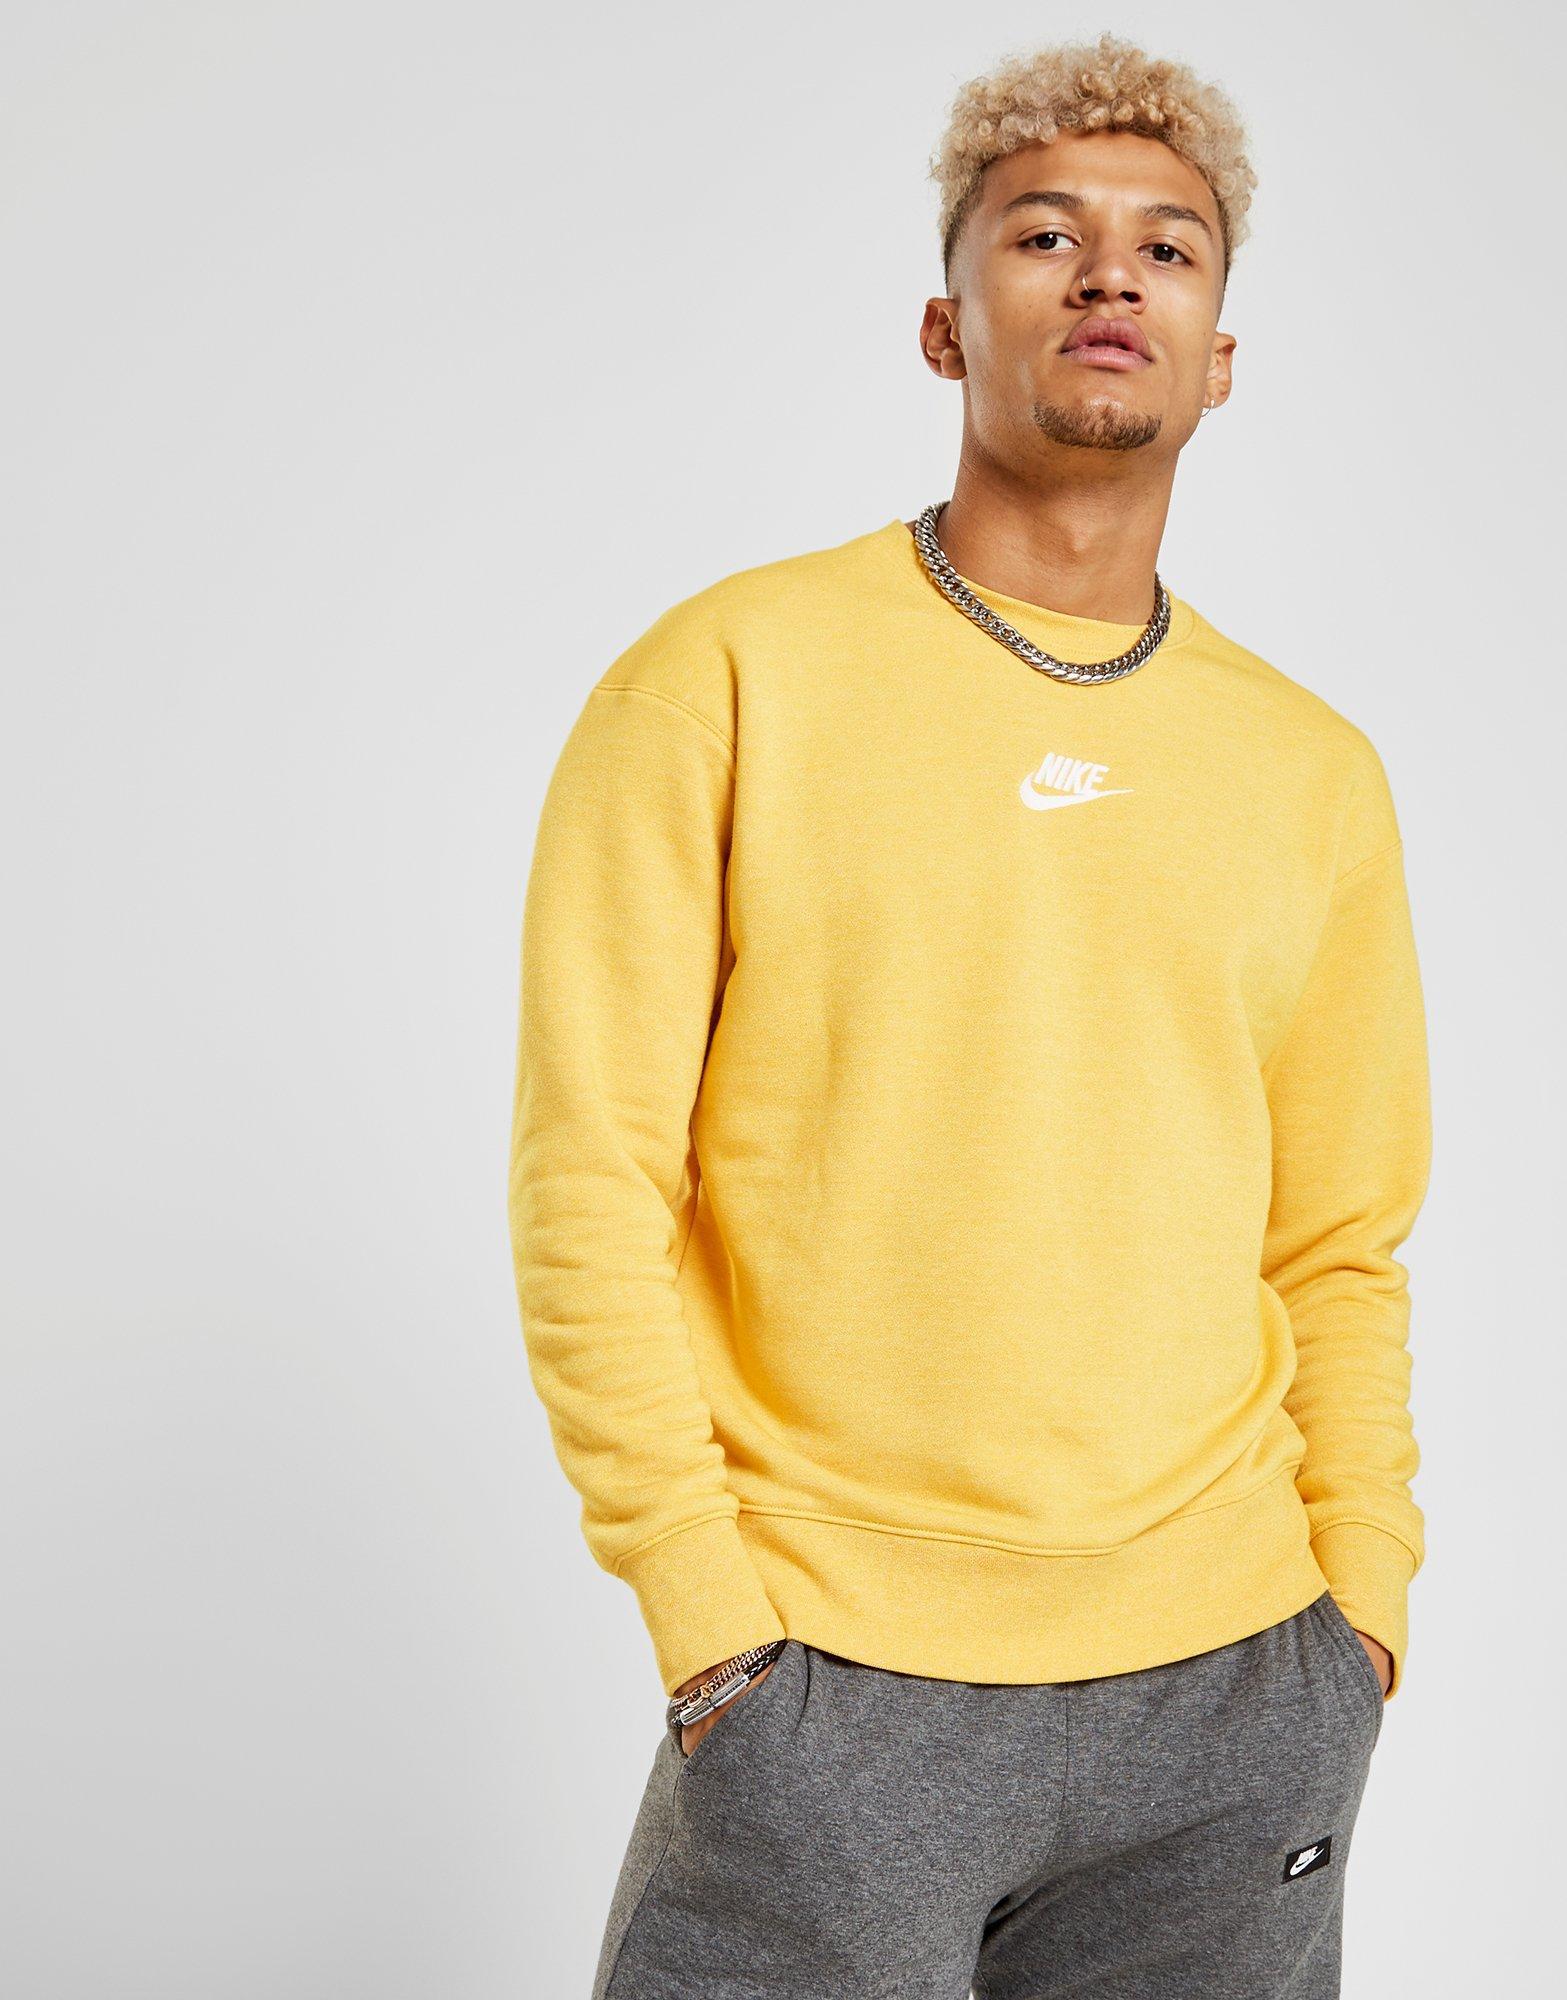 yellow nike crewneck sweatshirt